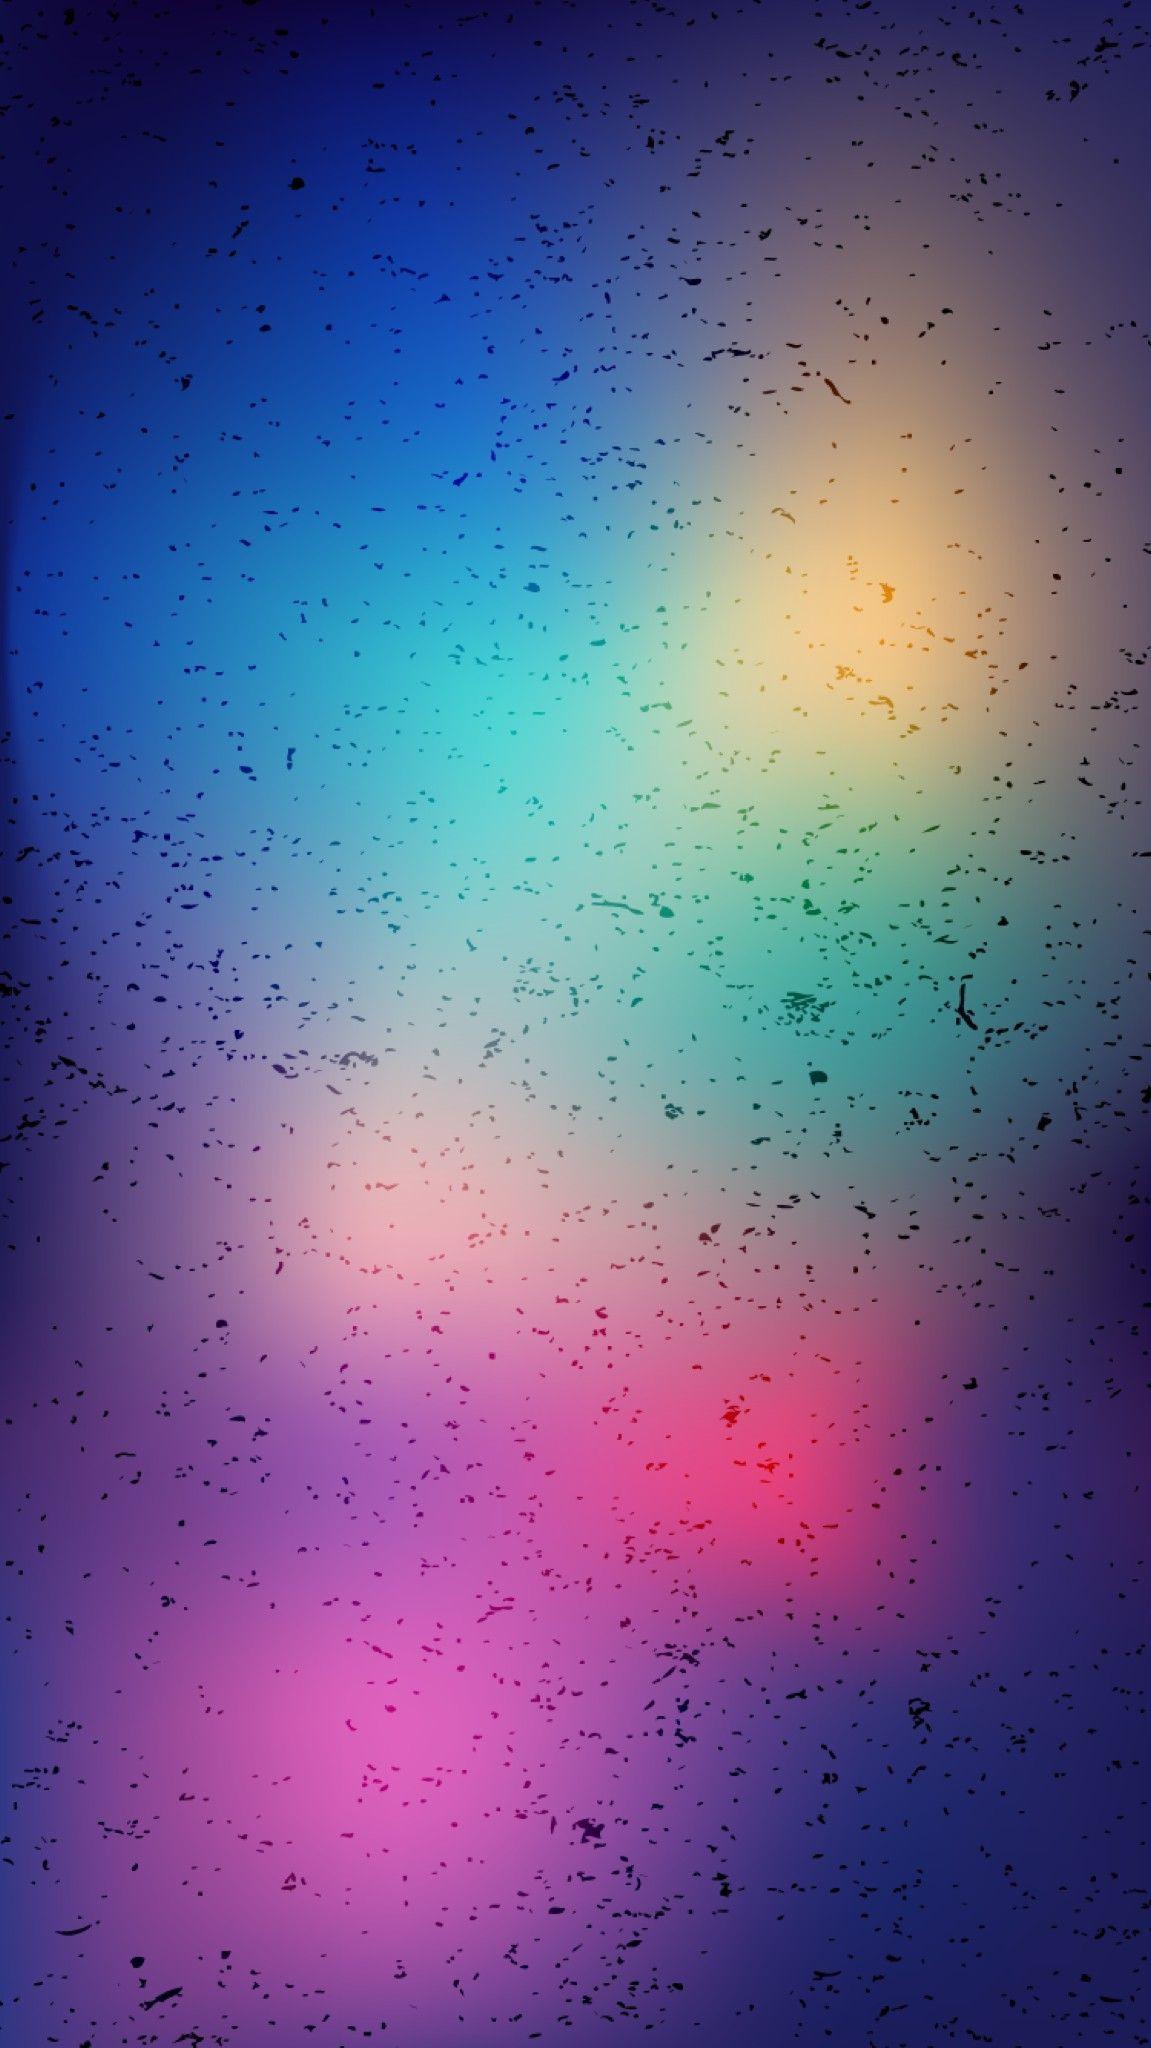 Blur Phone Wallpapers Top Những Hình Ảnh Đẹp